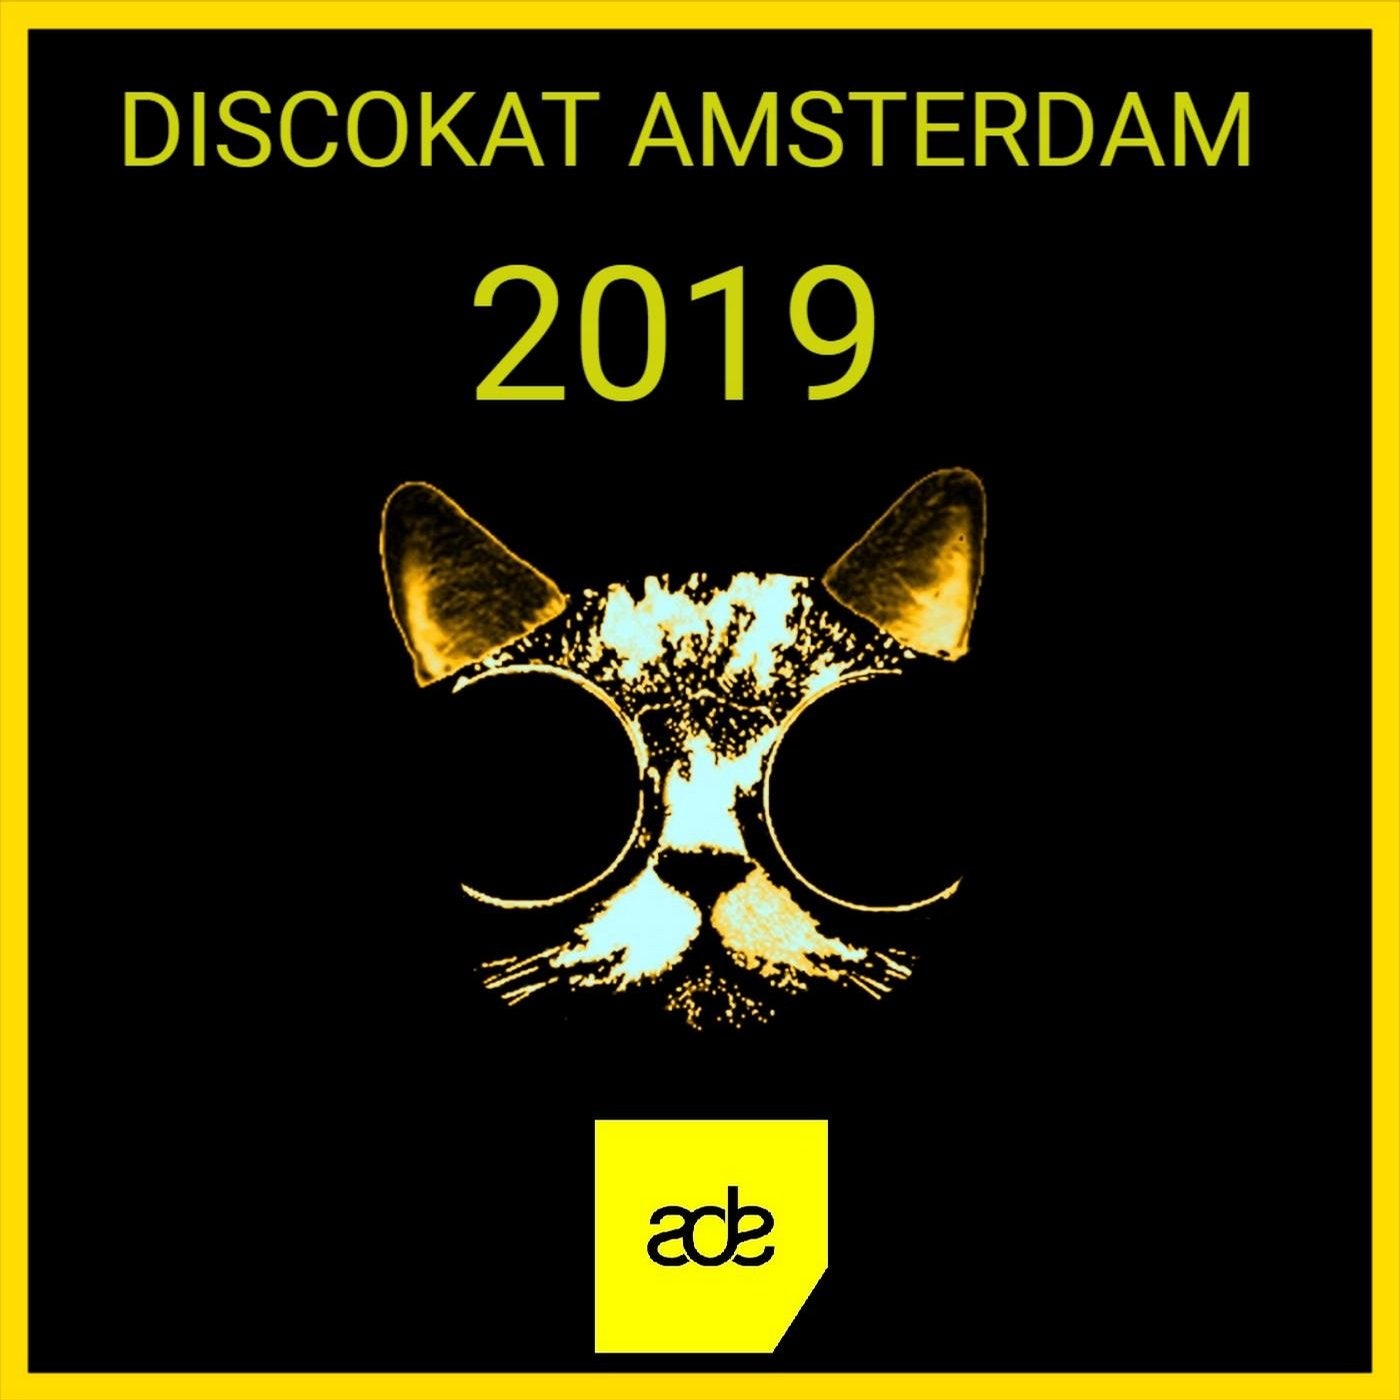 DISCOKAT AMSTERDAM 2019 (ADE)